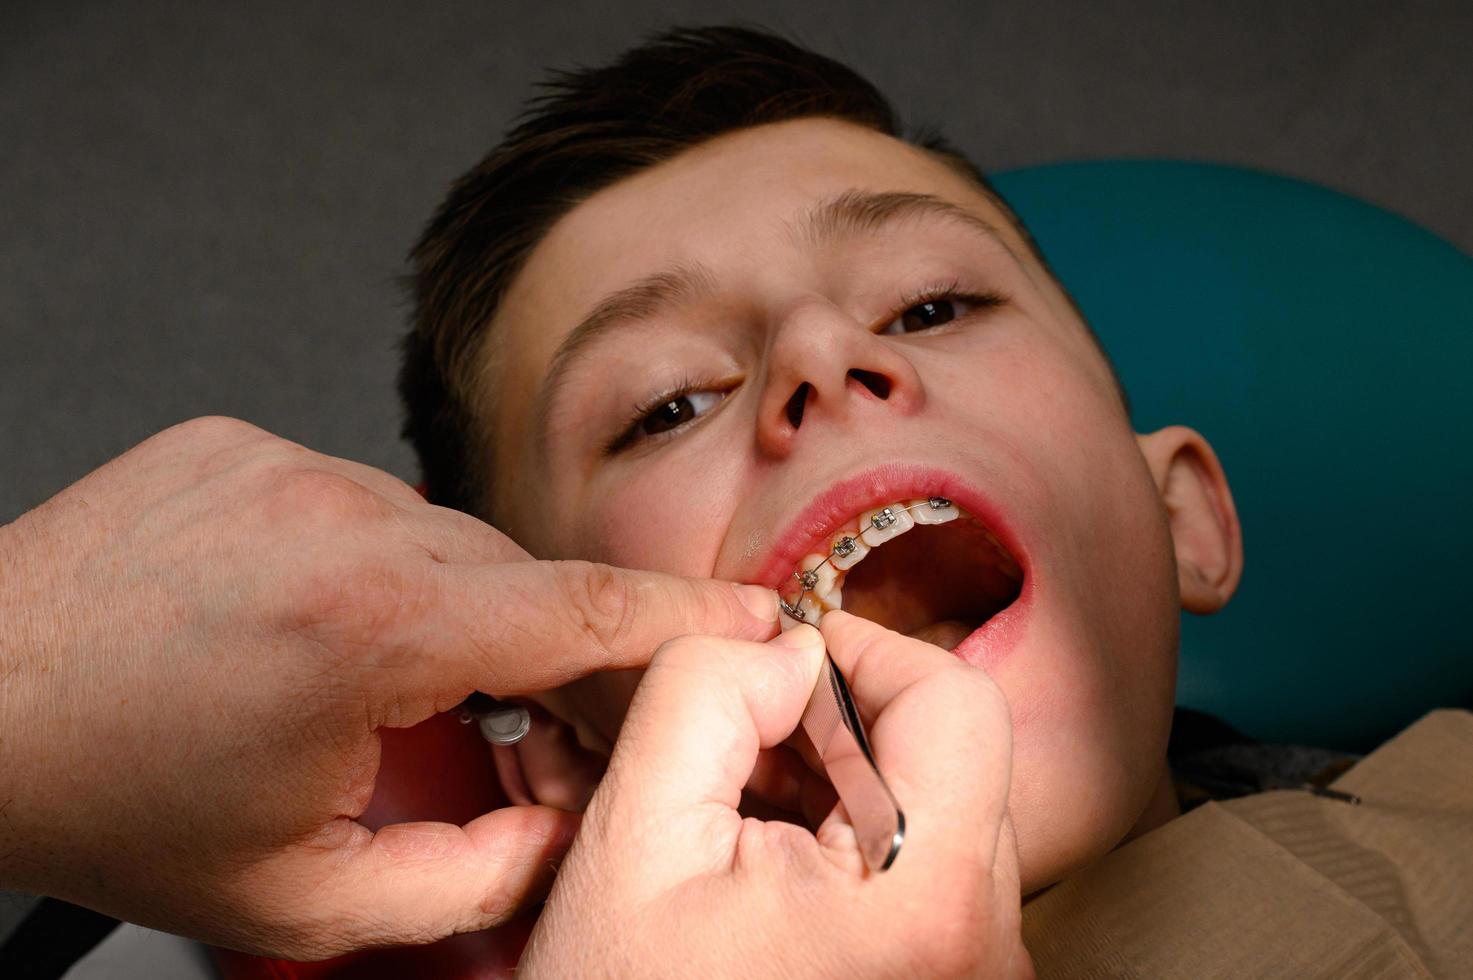 ett ortodontist lim och fäster tandställning på de övre tänder av en skolpojke, inriktning tänder med tandställning. foto